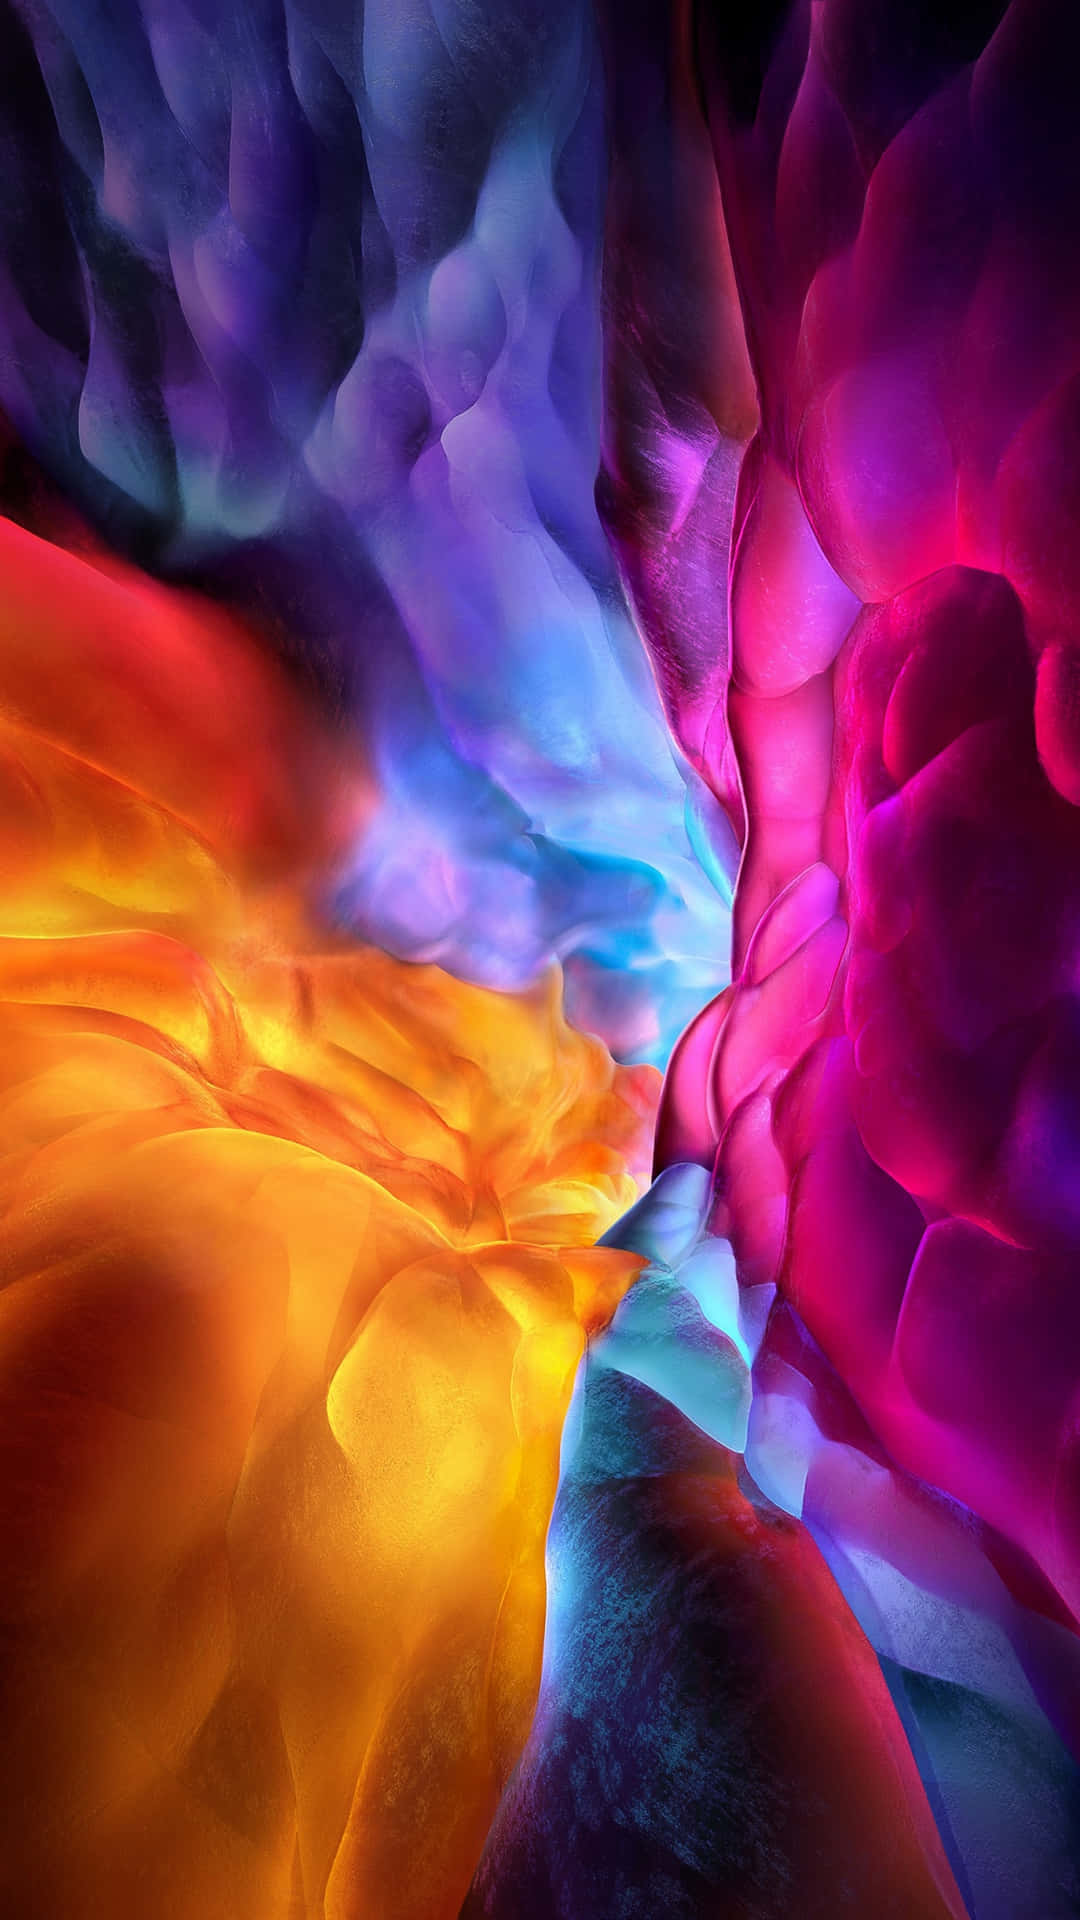 Unaimagen Abstracta Y Colorida De Una Flor También Colorida Fondo de pantalla